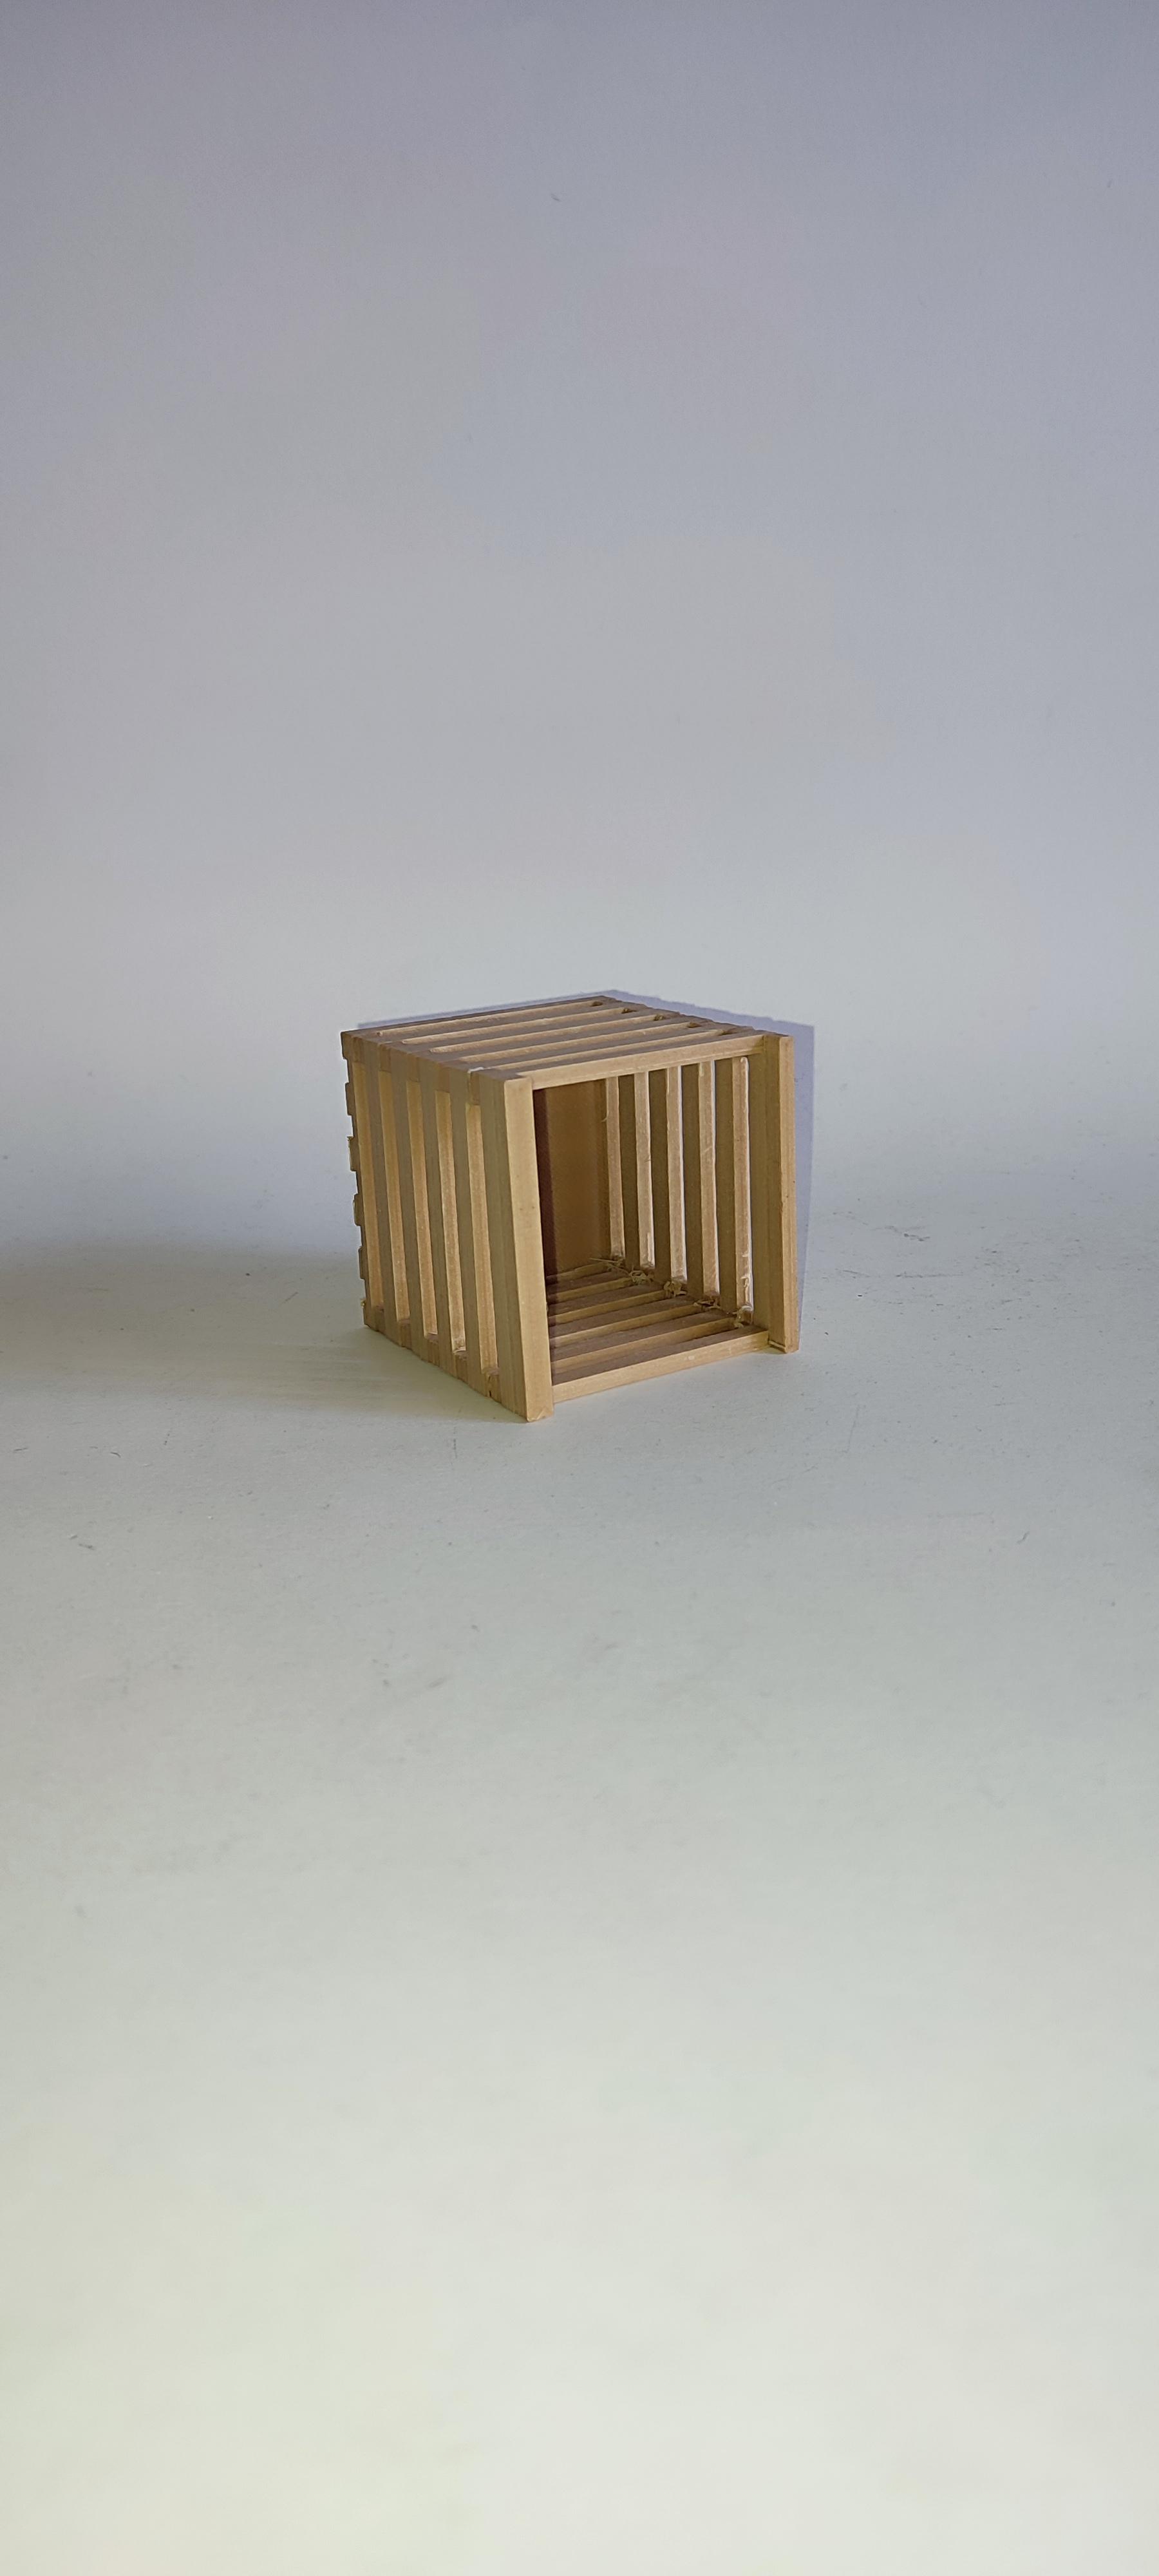 Wooden box.stl 3d model